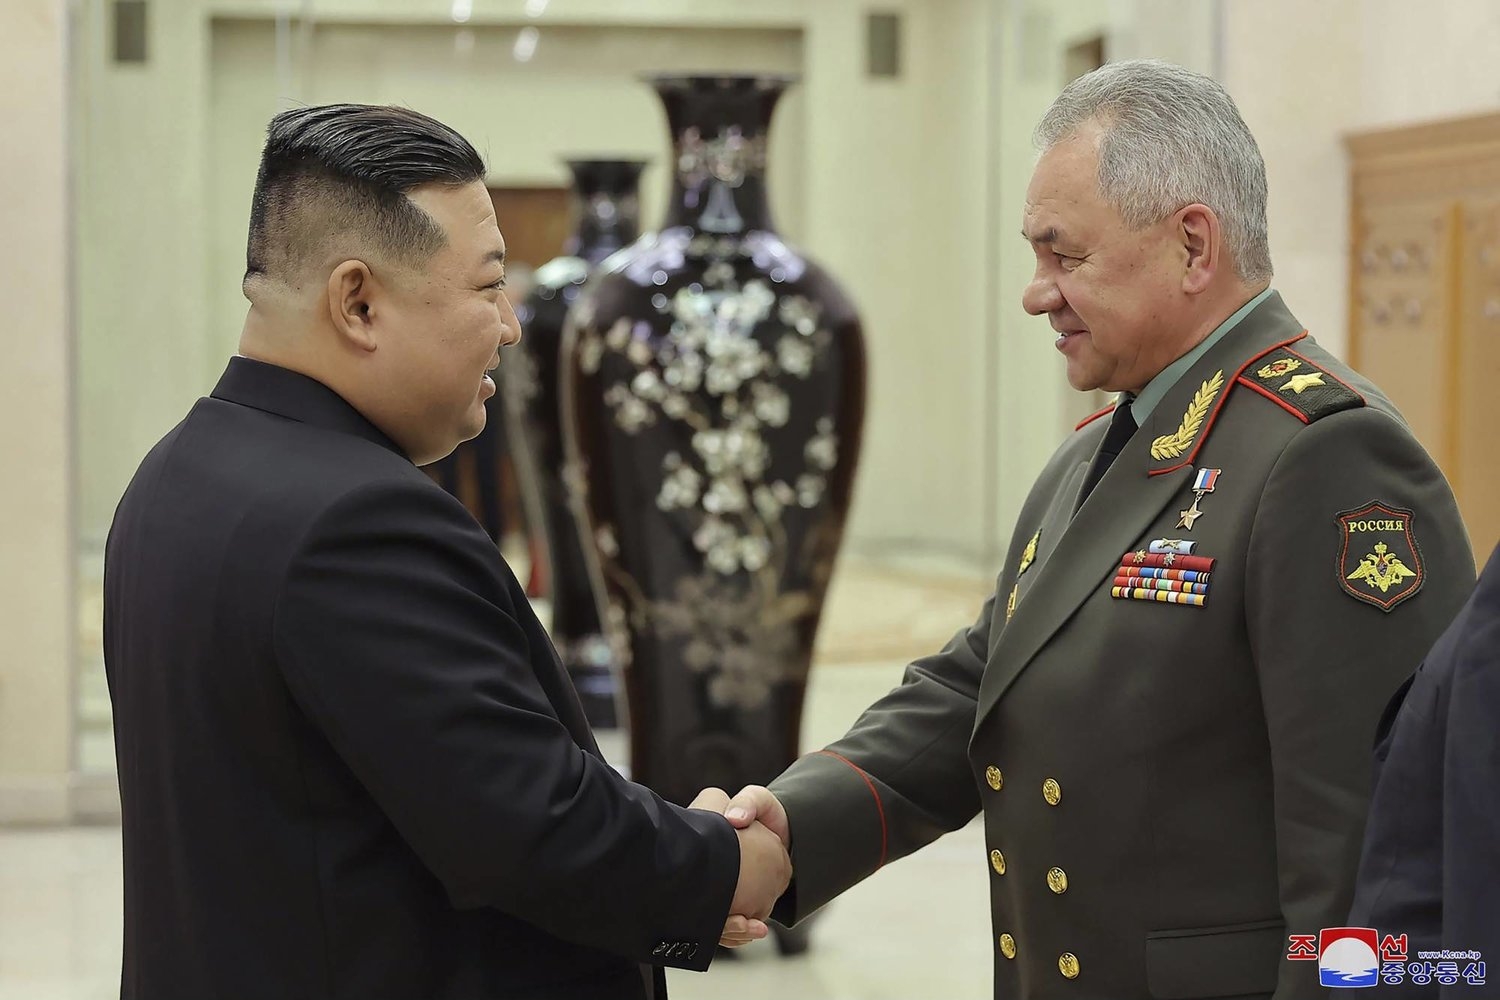 زعيم كوريا الشمالية يلتقي وزير الدفاع الروسي في بيونغ يانغ